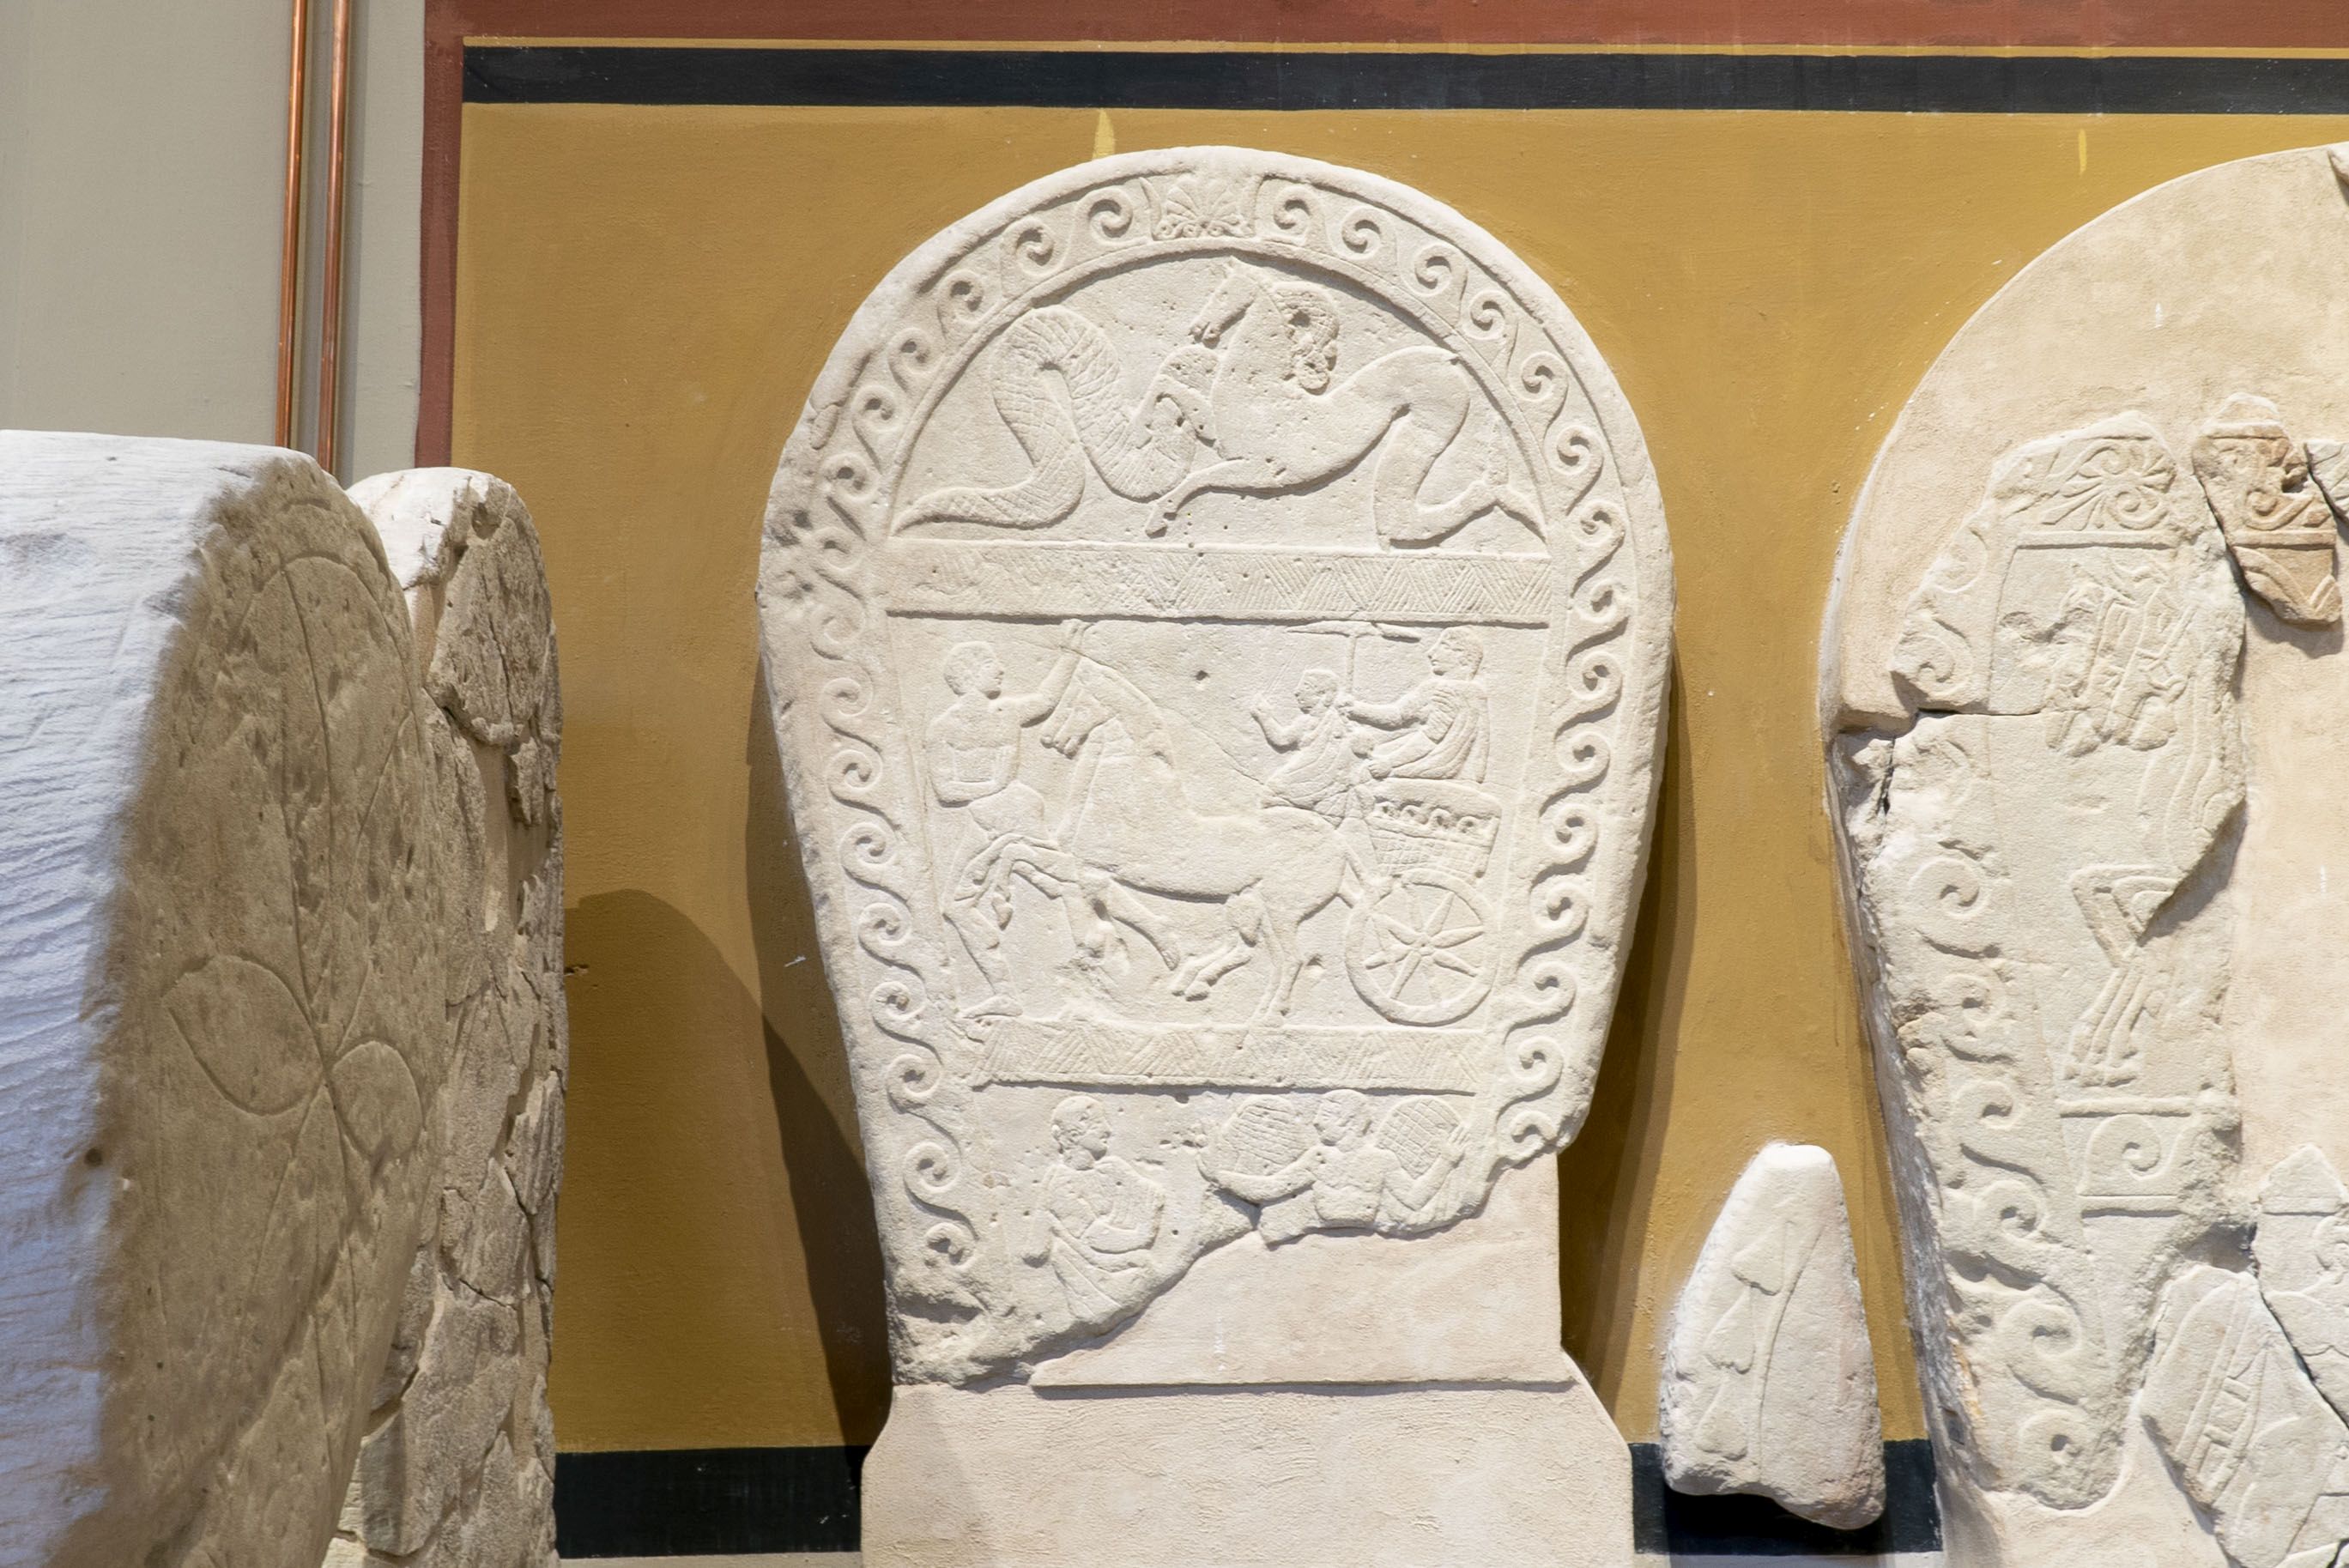 bologna_archeologico_06_Sezione_Etrusca_stele-in-arenaria_foto-ornella-de-carlo_courtesy-musei-civici-bo